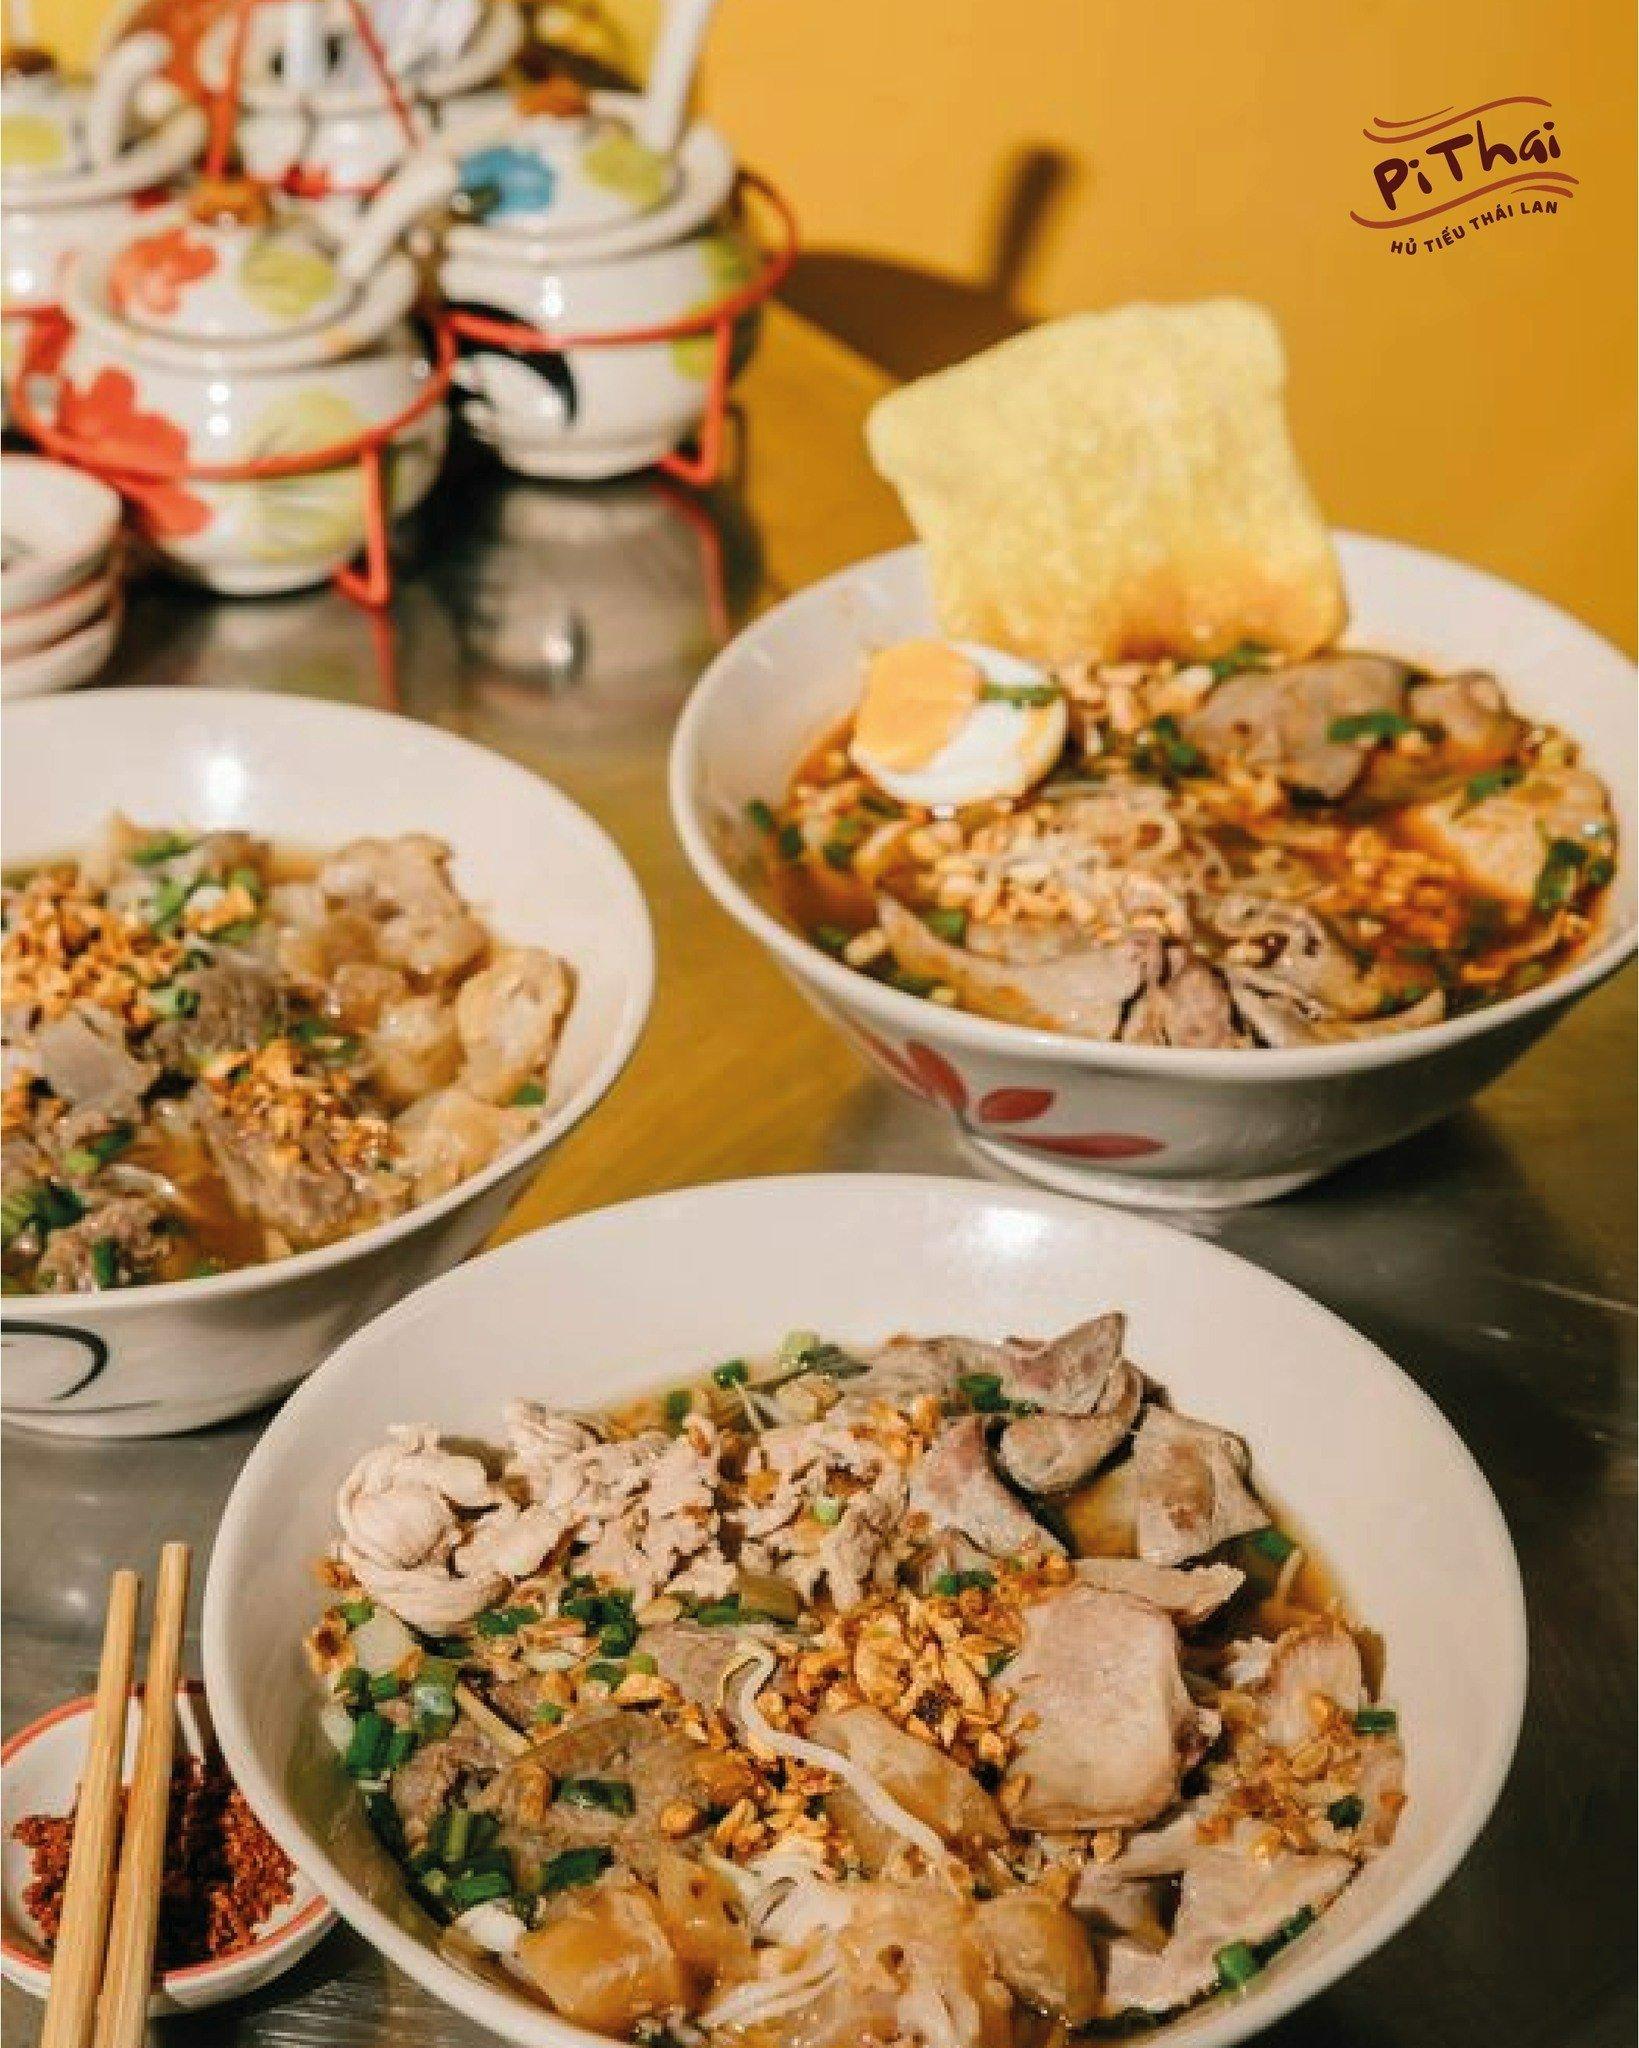 Hủ tiếu Thái Lan Pi Thai là lựa chọn của các tín đồ sành ăn tại Sài Gòn dành cho các bạn trẻ (nguồn: internet)